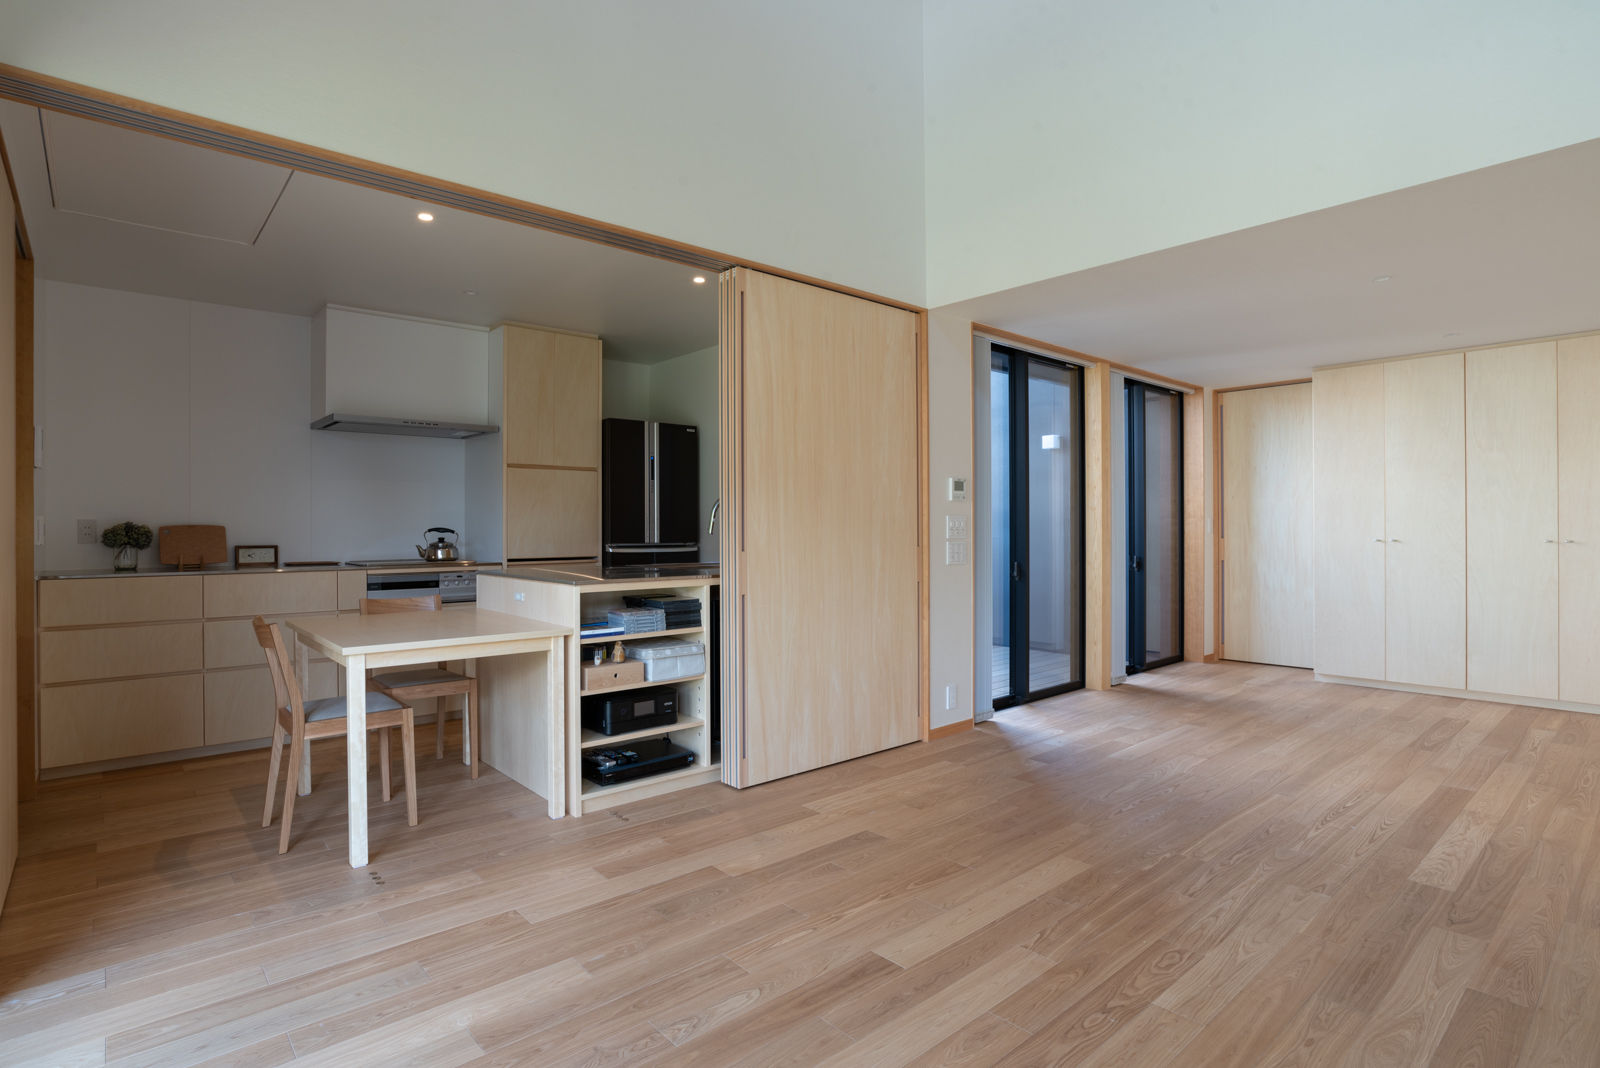 リビングからキッチンを見る 家山真建築研究室 Makoto Ieyama Architect Office ミニマルデザインの キッチン